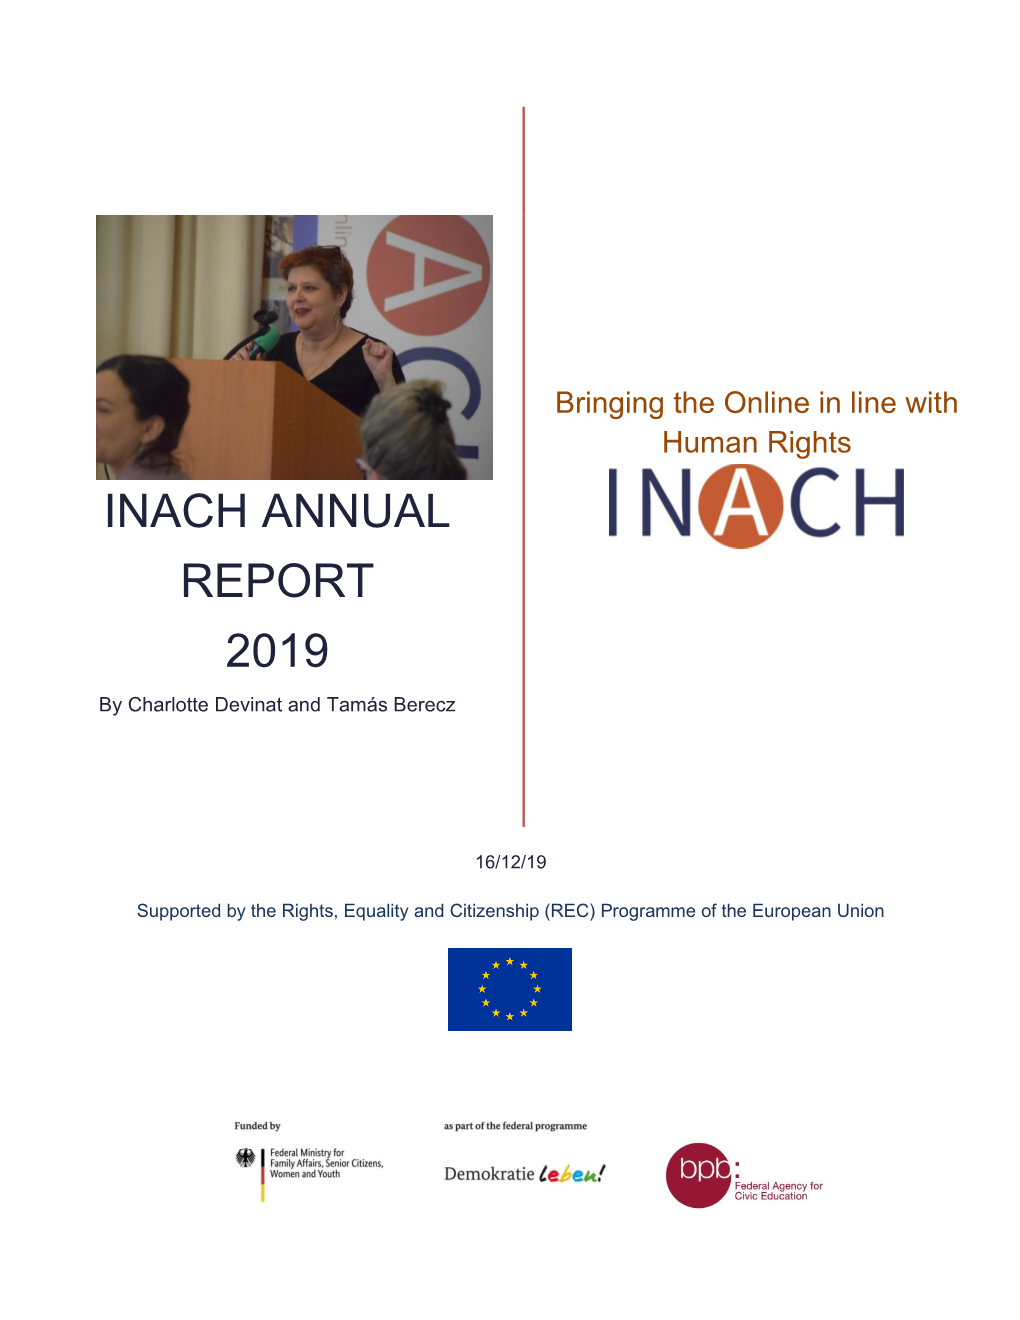 Inach Annual Report 2019